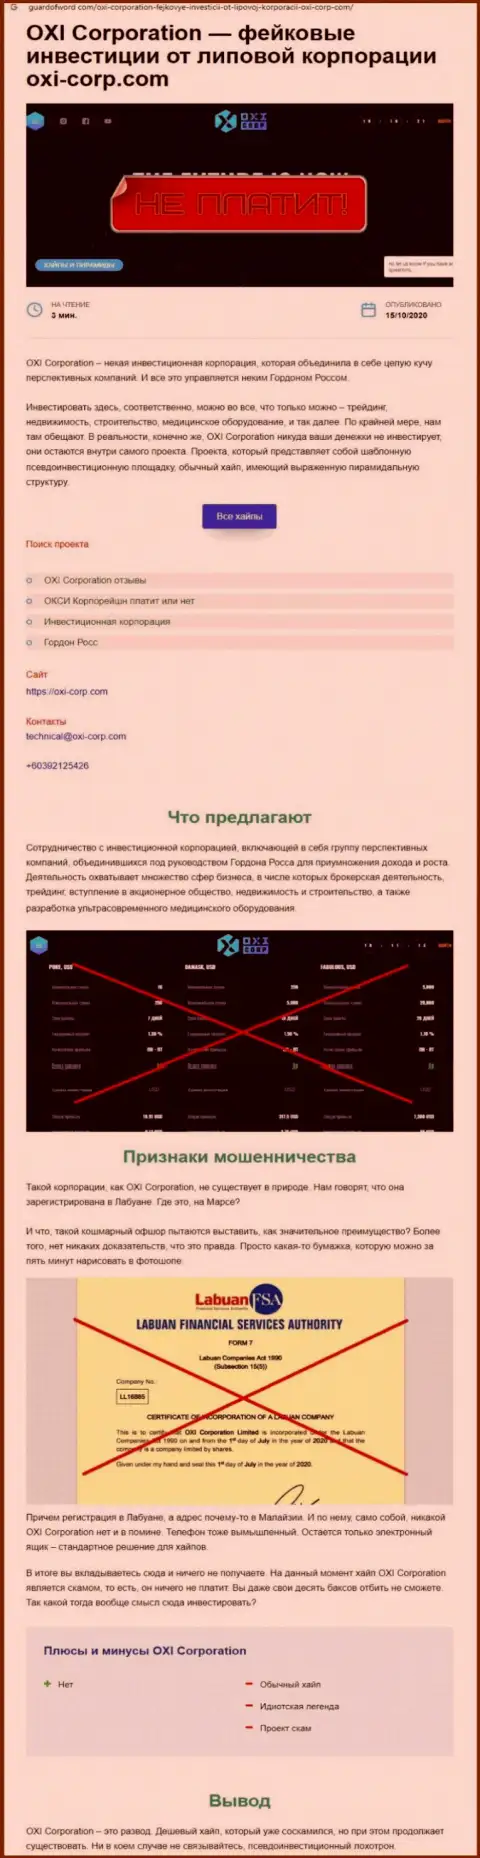 Обзор Окси Корпорейшн, взятый на одном из сайтов-отзовиков